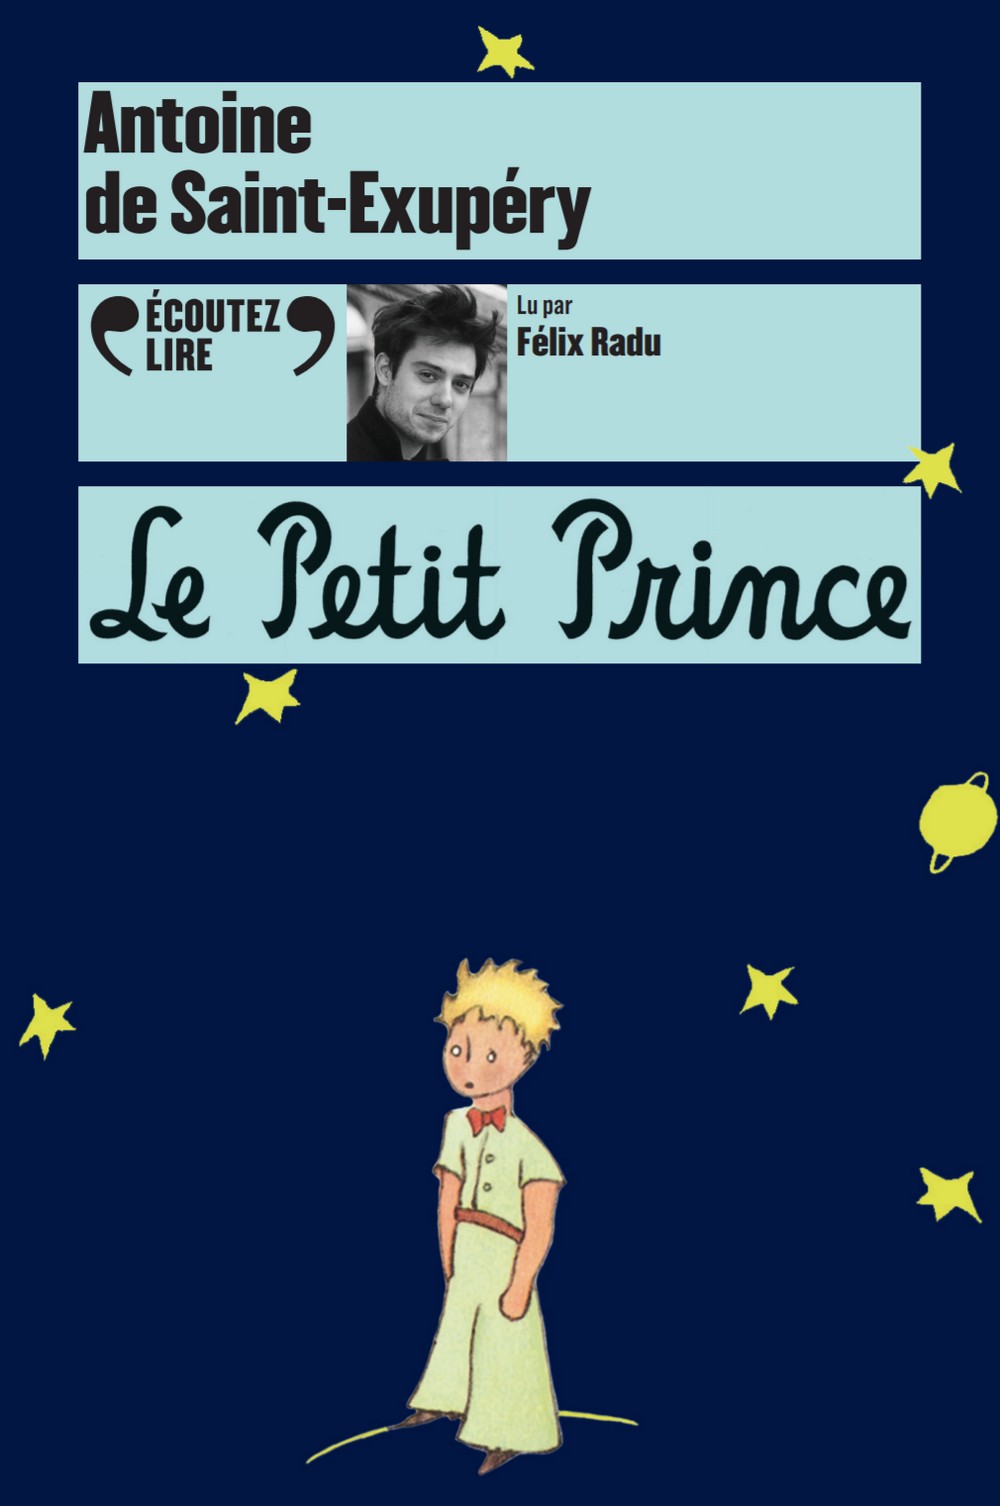 Livre-Audio CD MP3 – Le Petit Prince lu par Félix Radu – Ecoutez lire